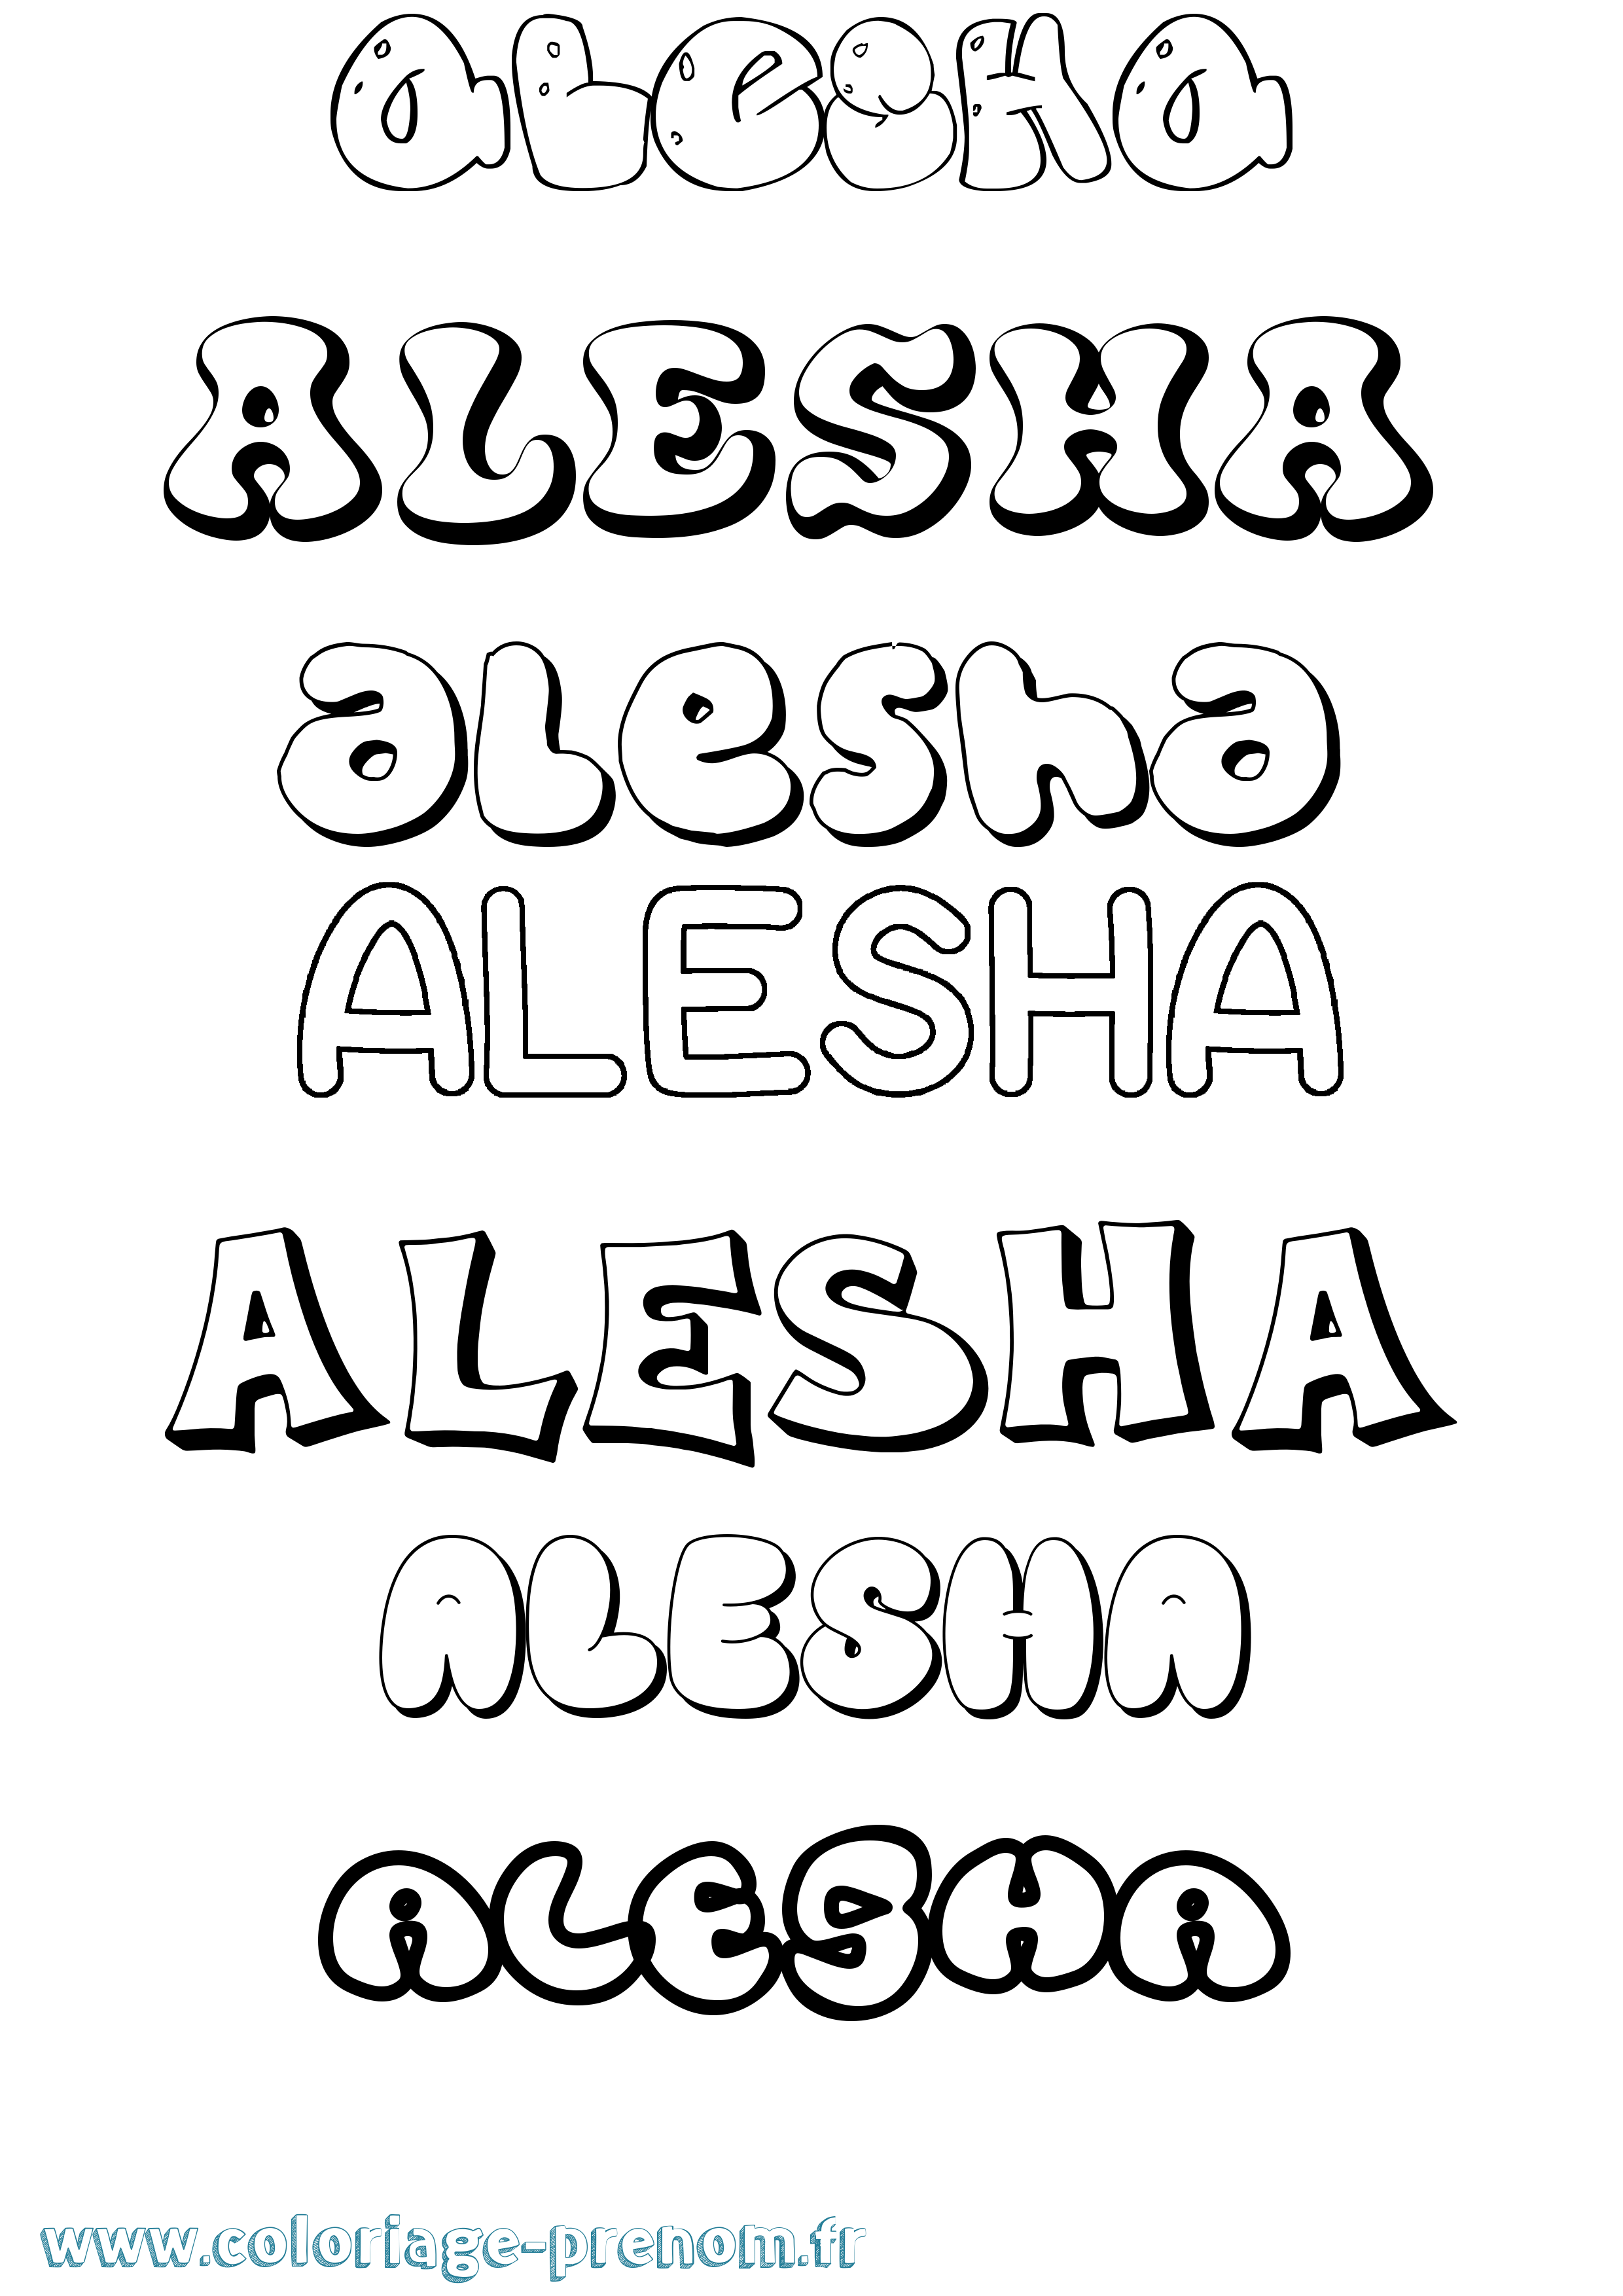 Coloriage prénom Alesha Bubble